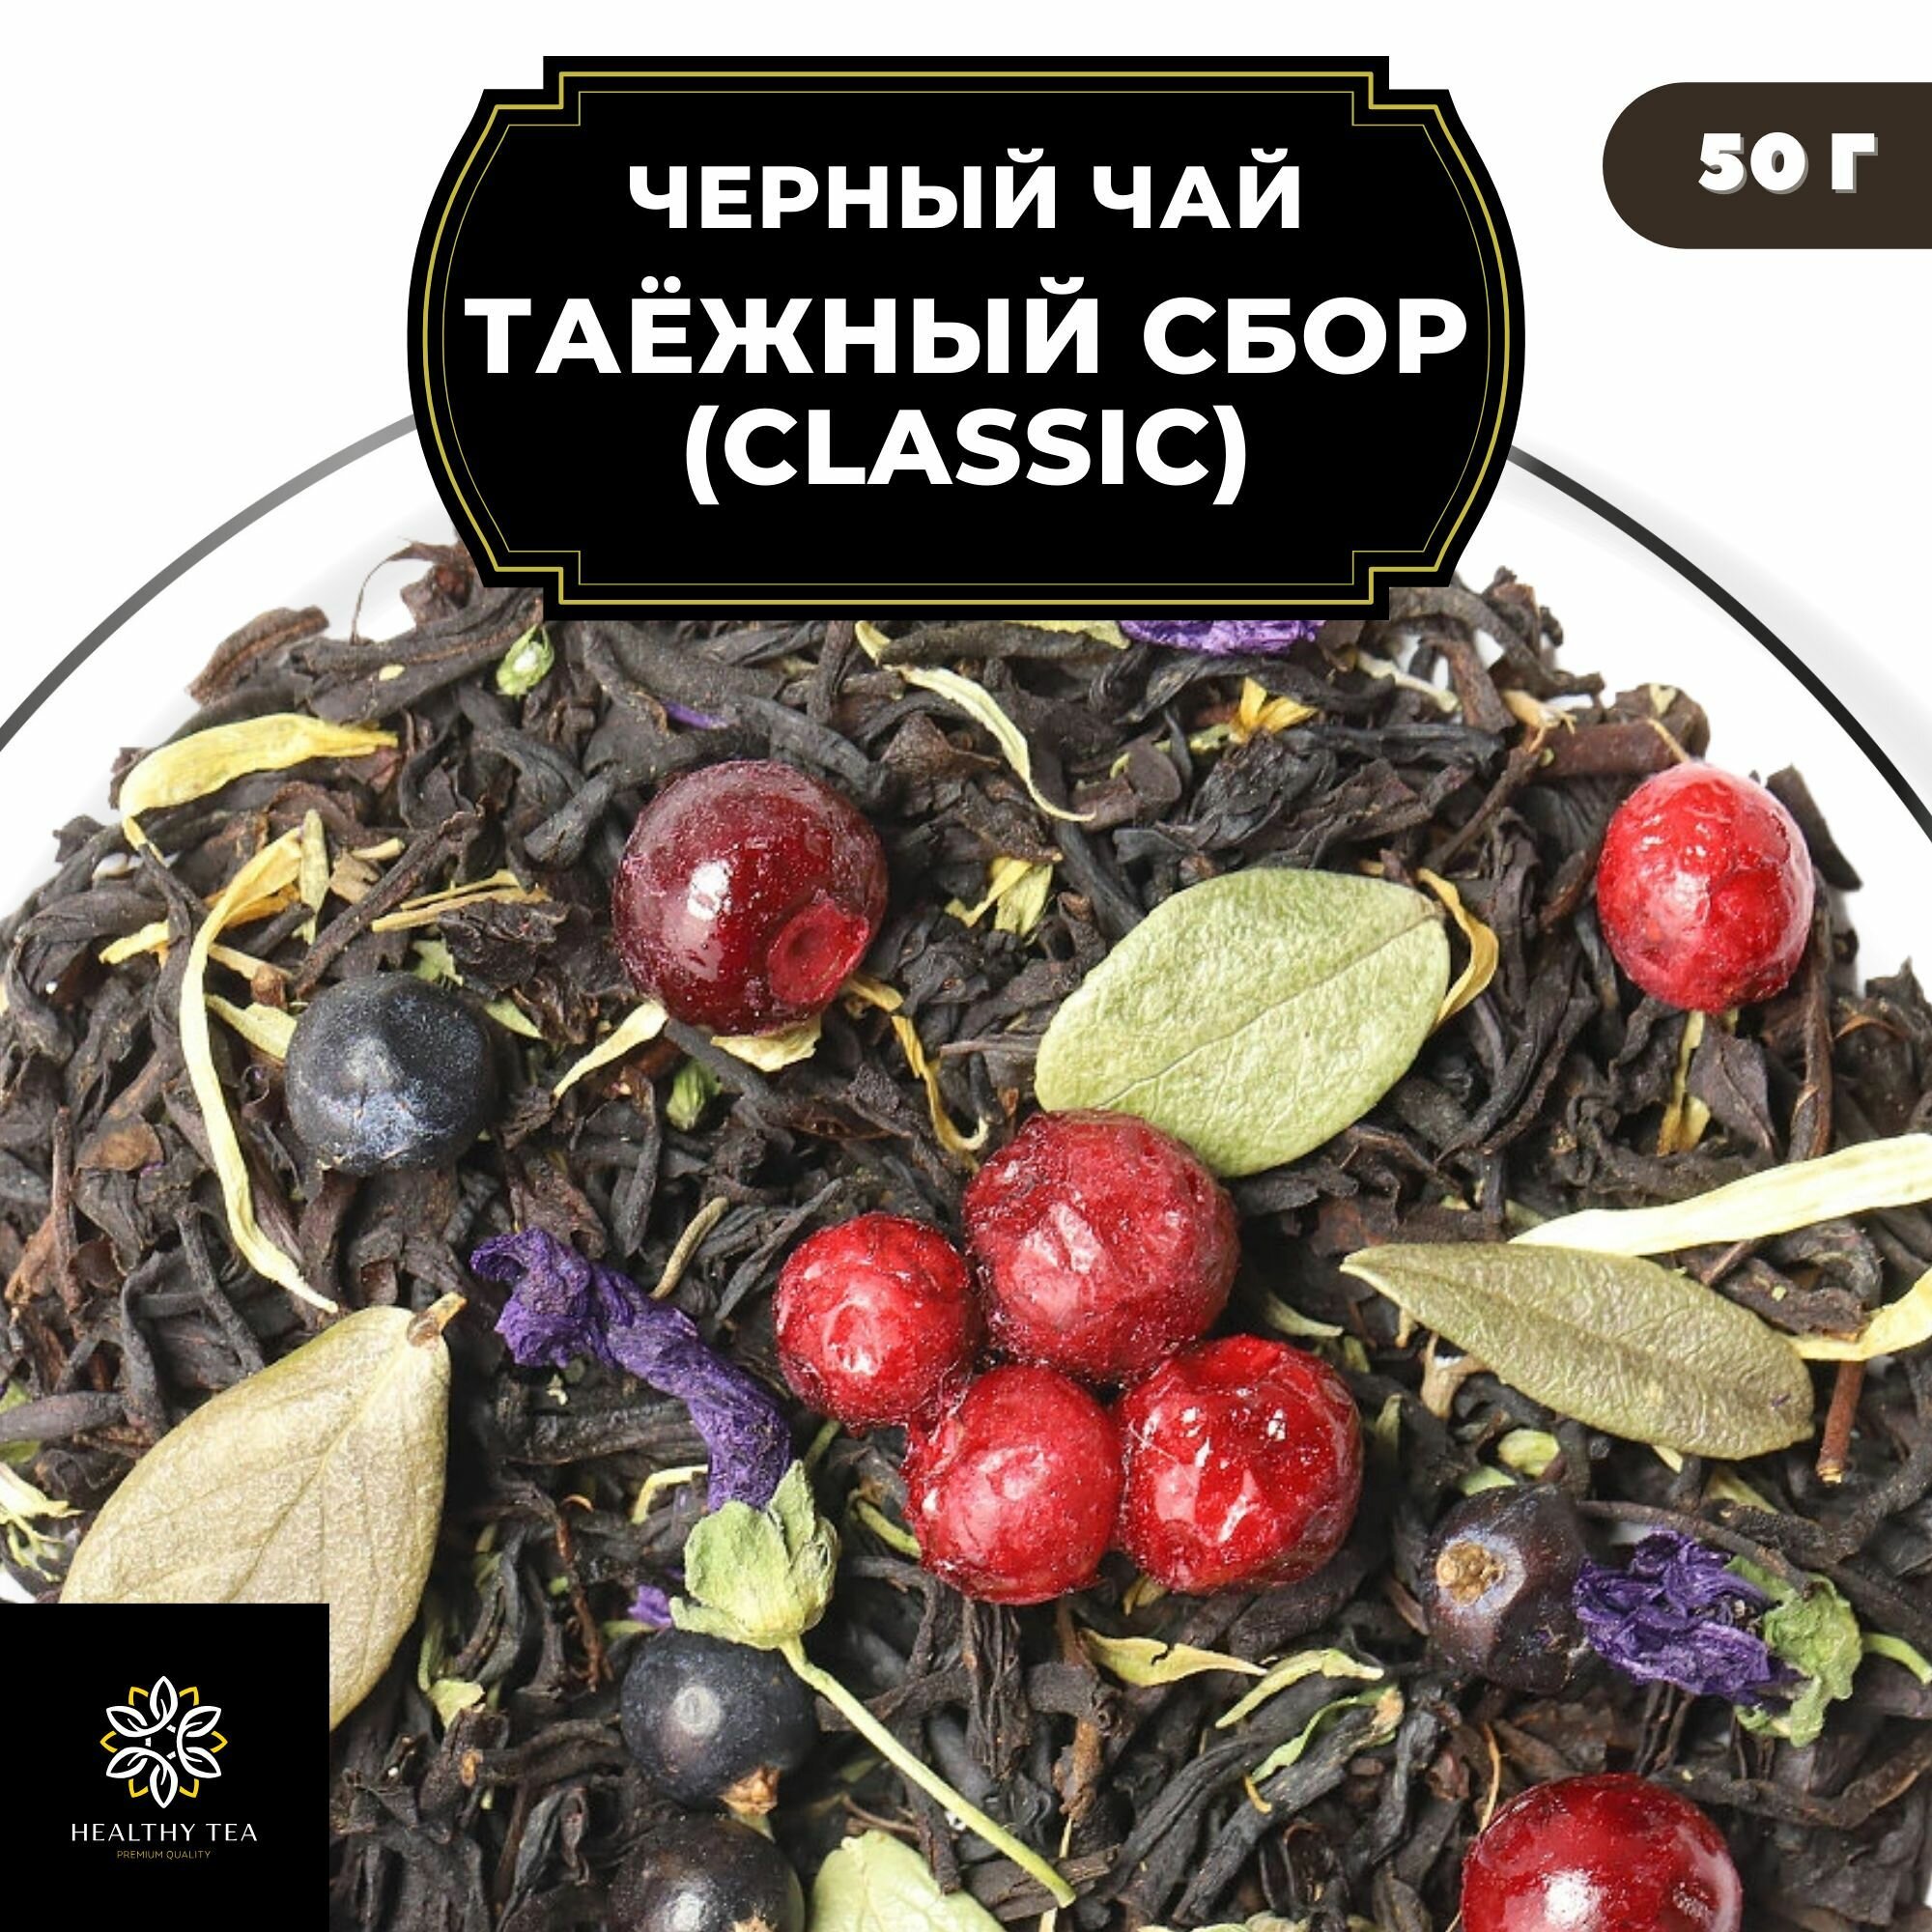 Индийский Черный чай с чабрецом, брусникой и можжевельником "Таежный Сбор" (Classic) Полезный чай / HEALTHY TEA, 50 гр